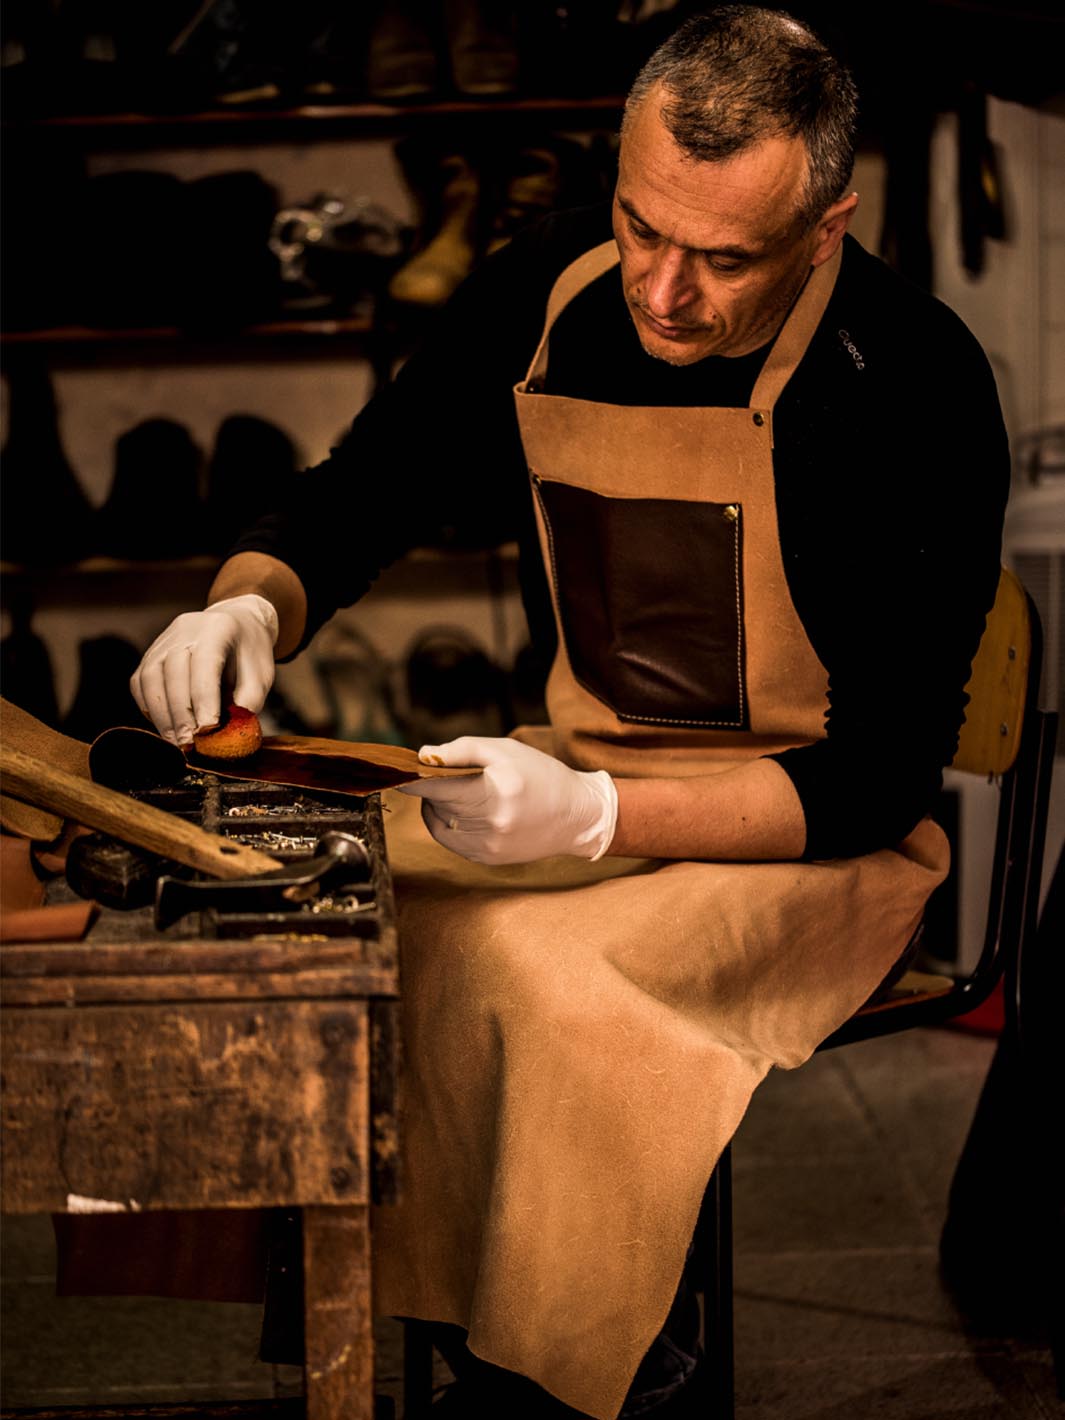 artigiano che pittura il cuoio nella sua bottega artigianale